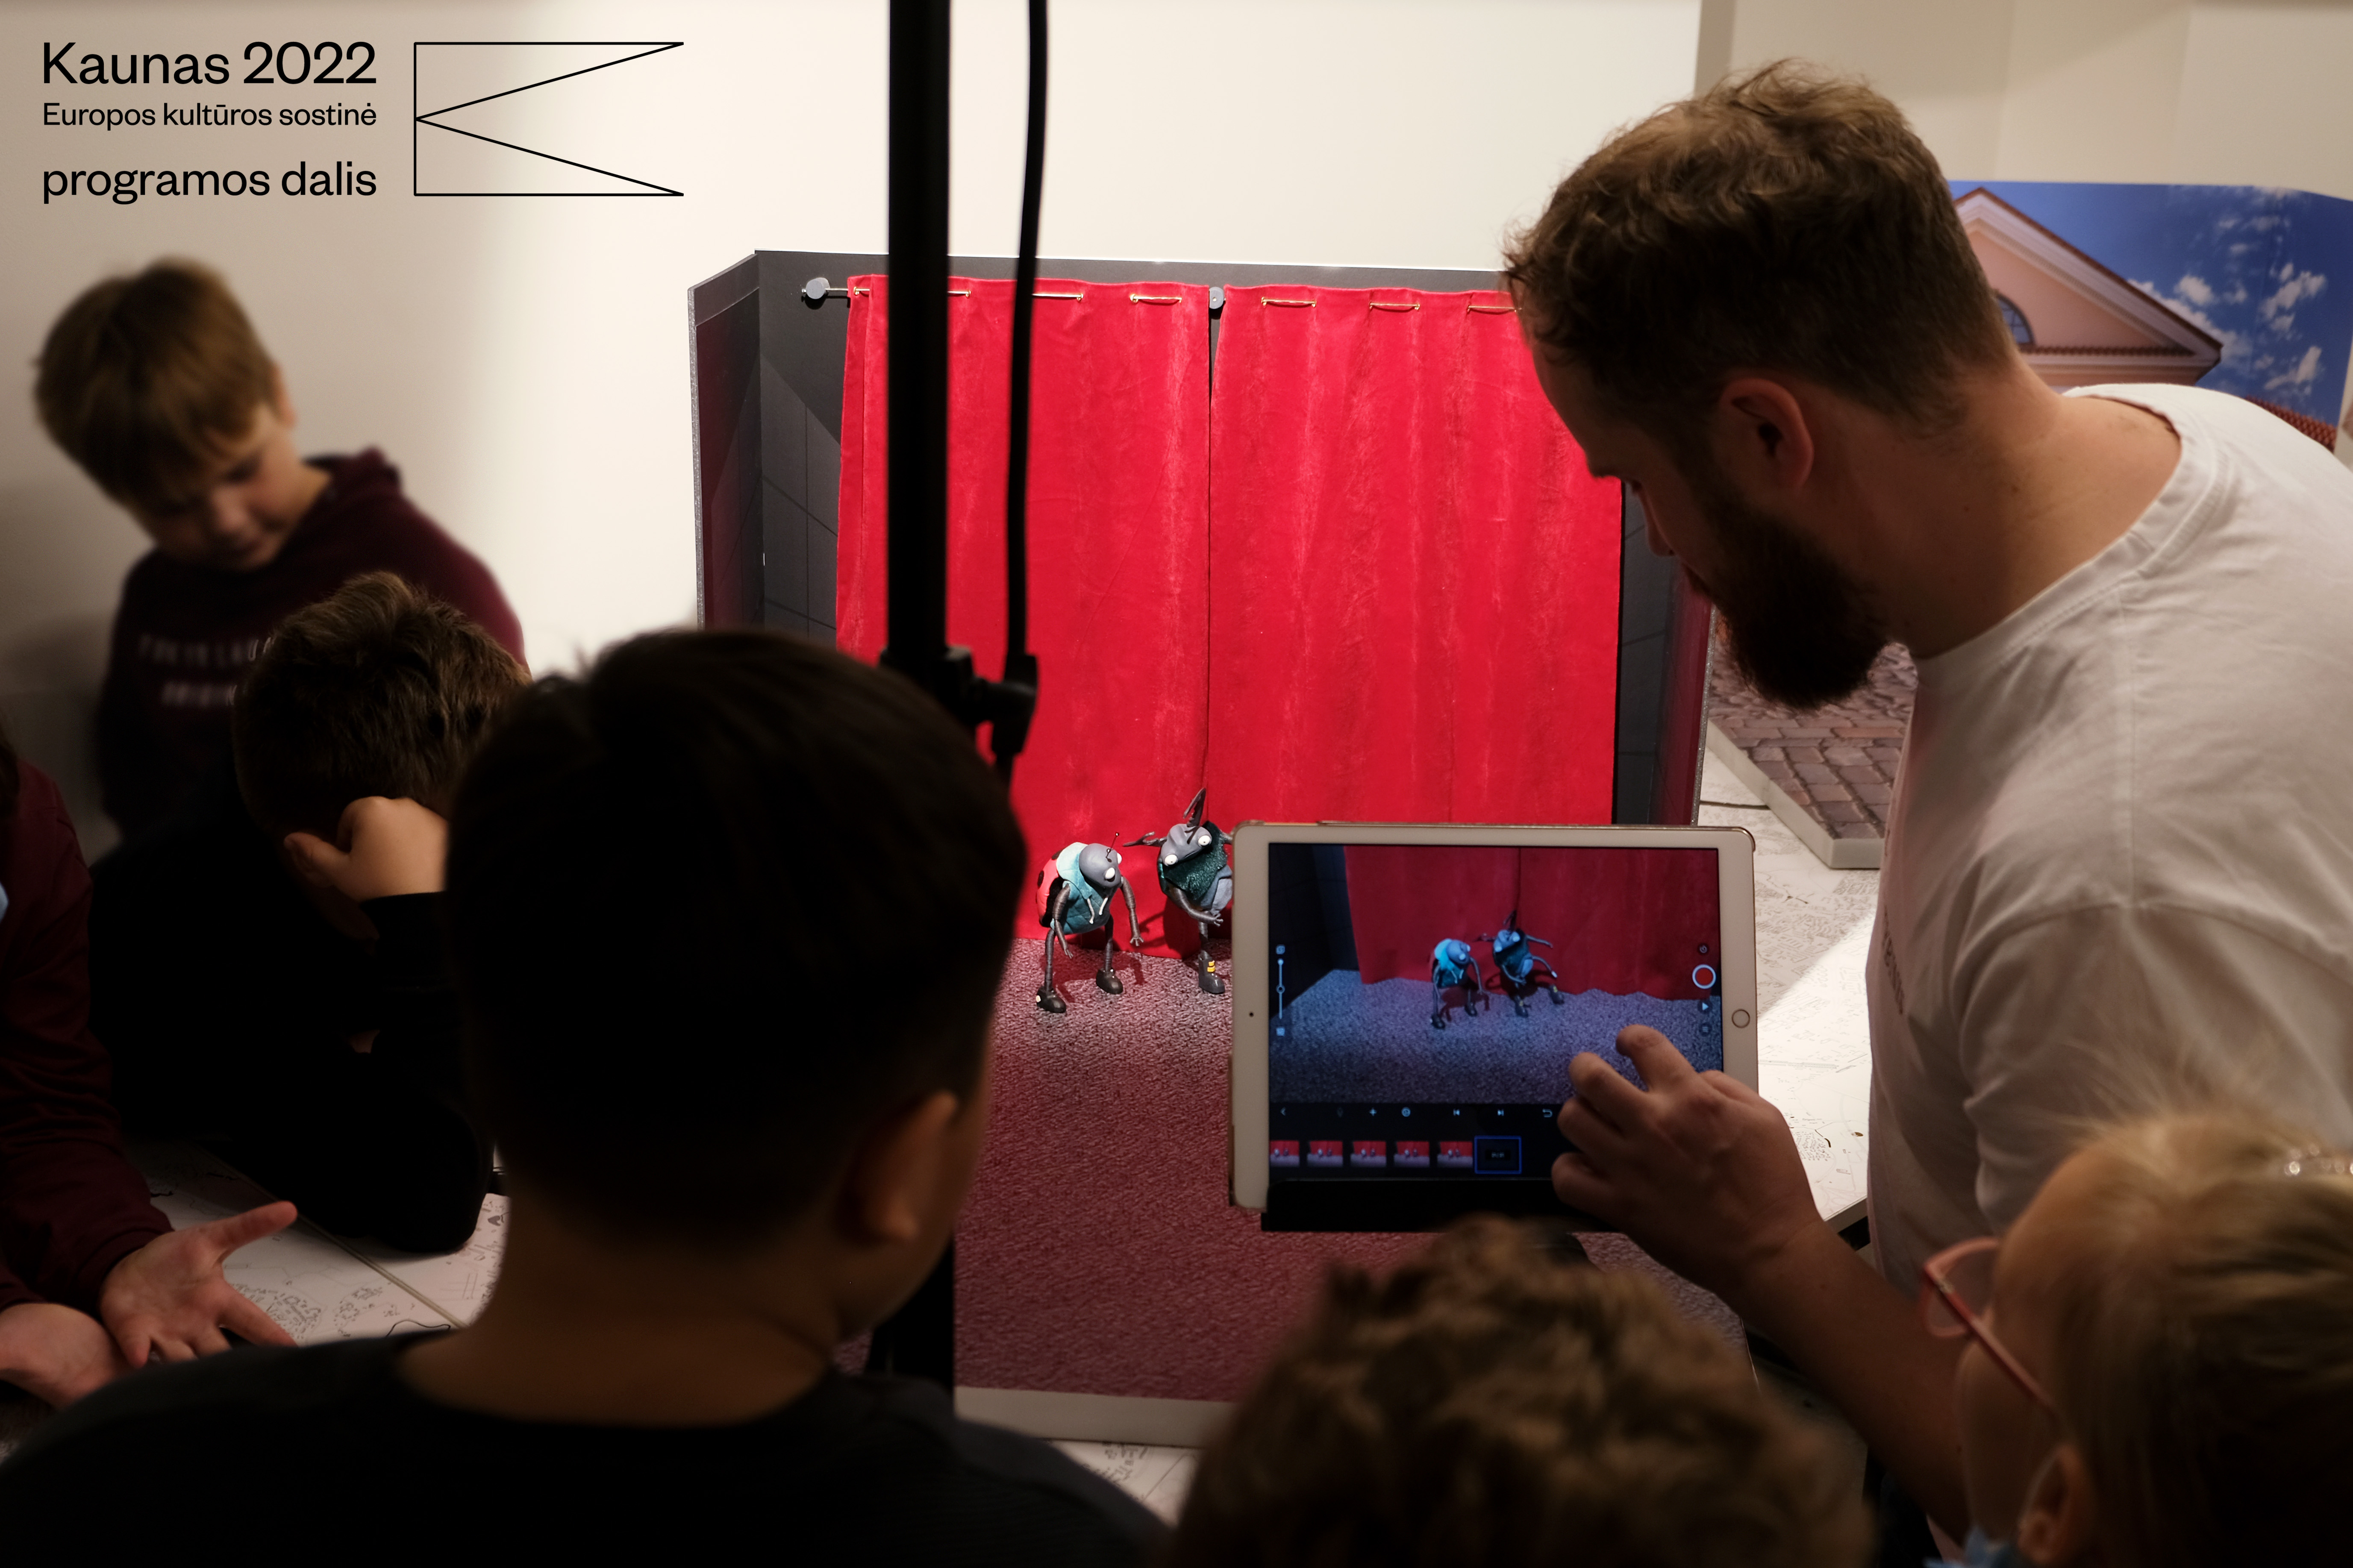 Warsztaty animacji zapraszają młodych miłośników filmu do odkrywania swojego potencjału twórczego